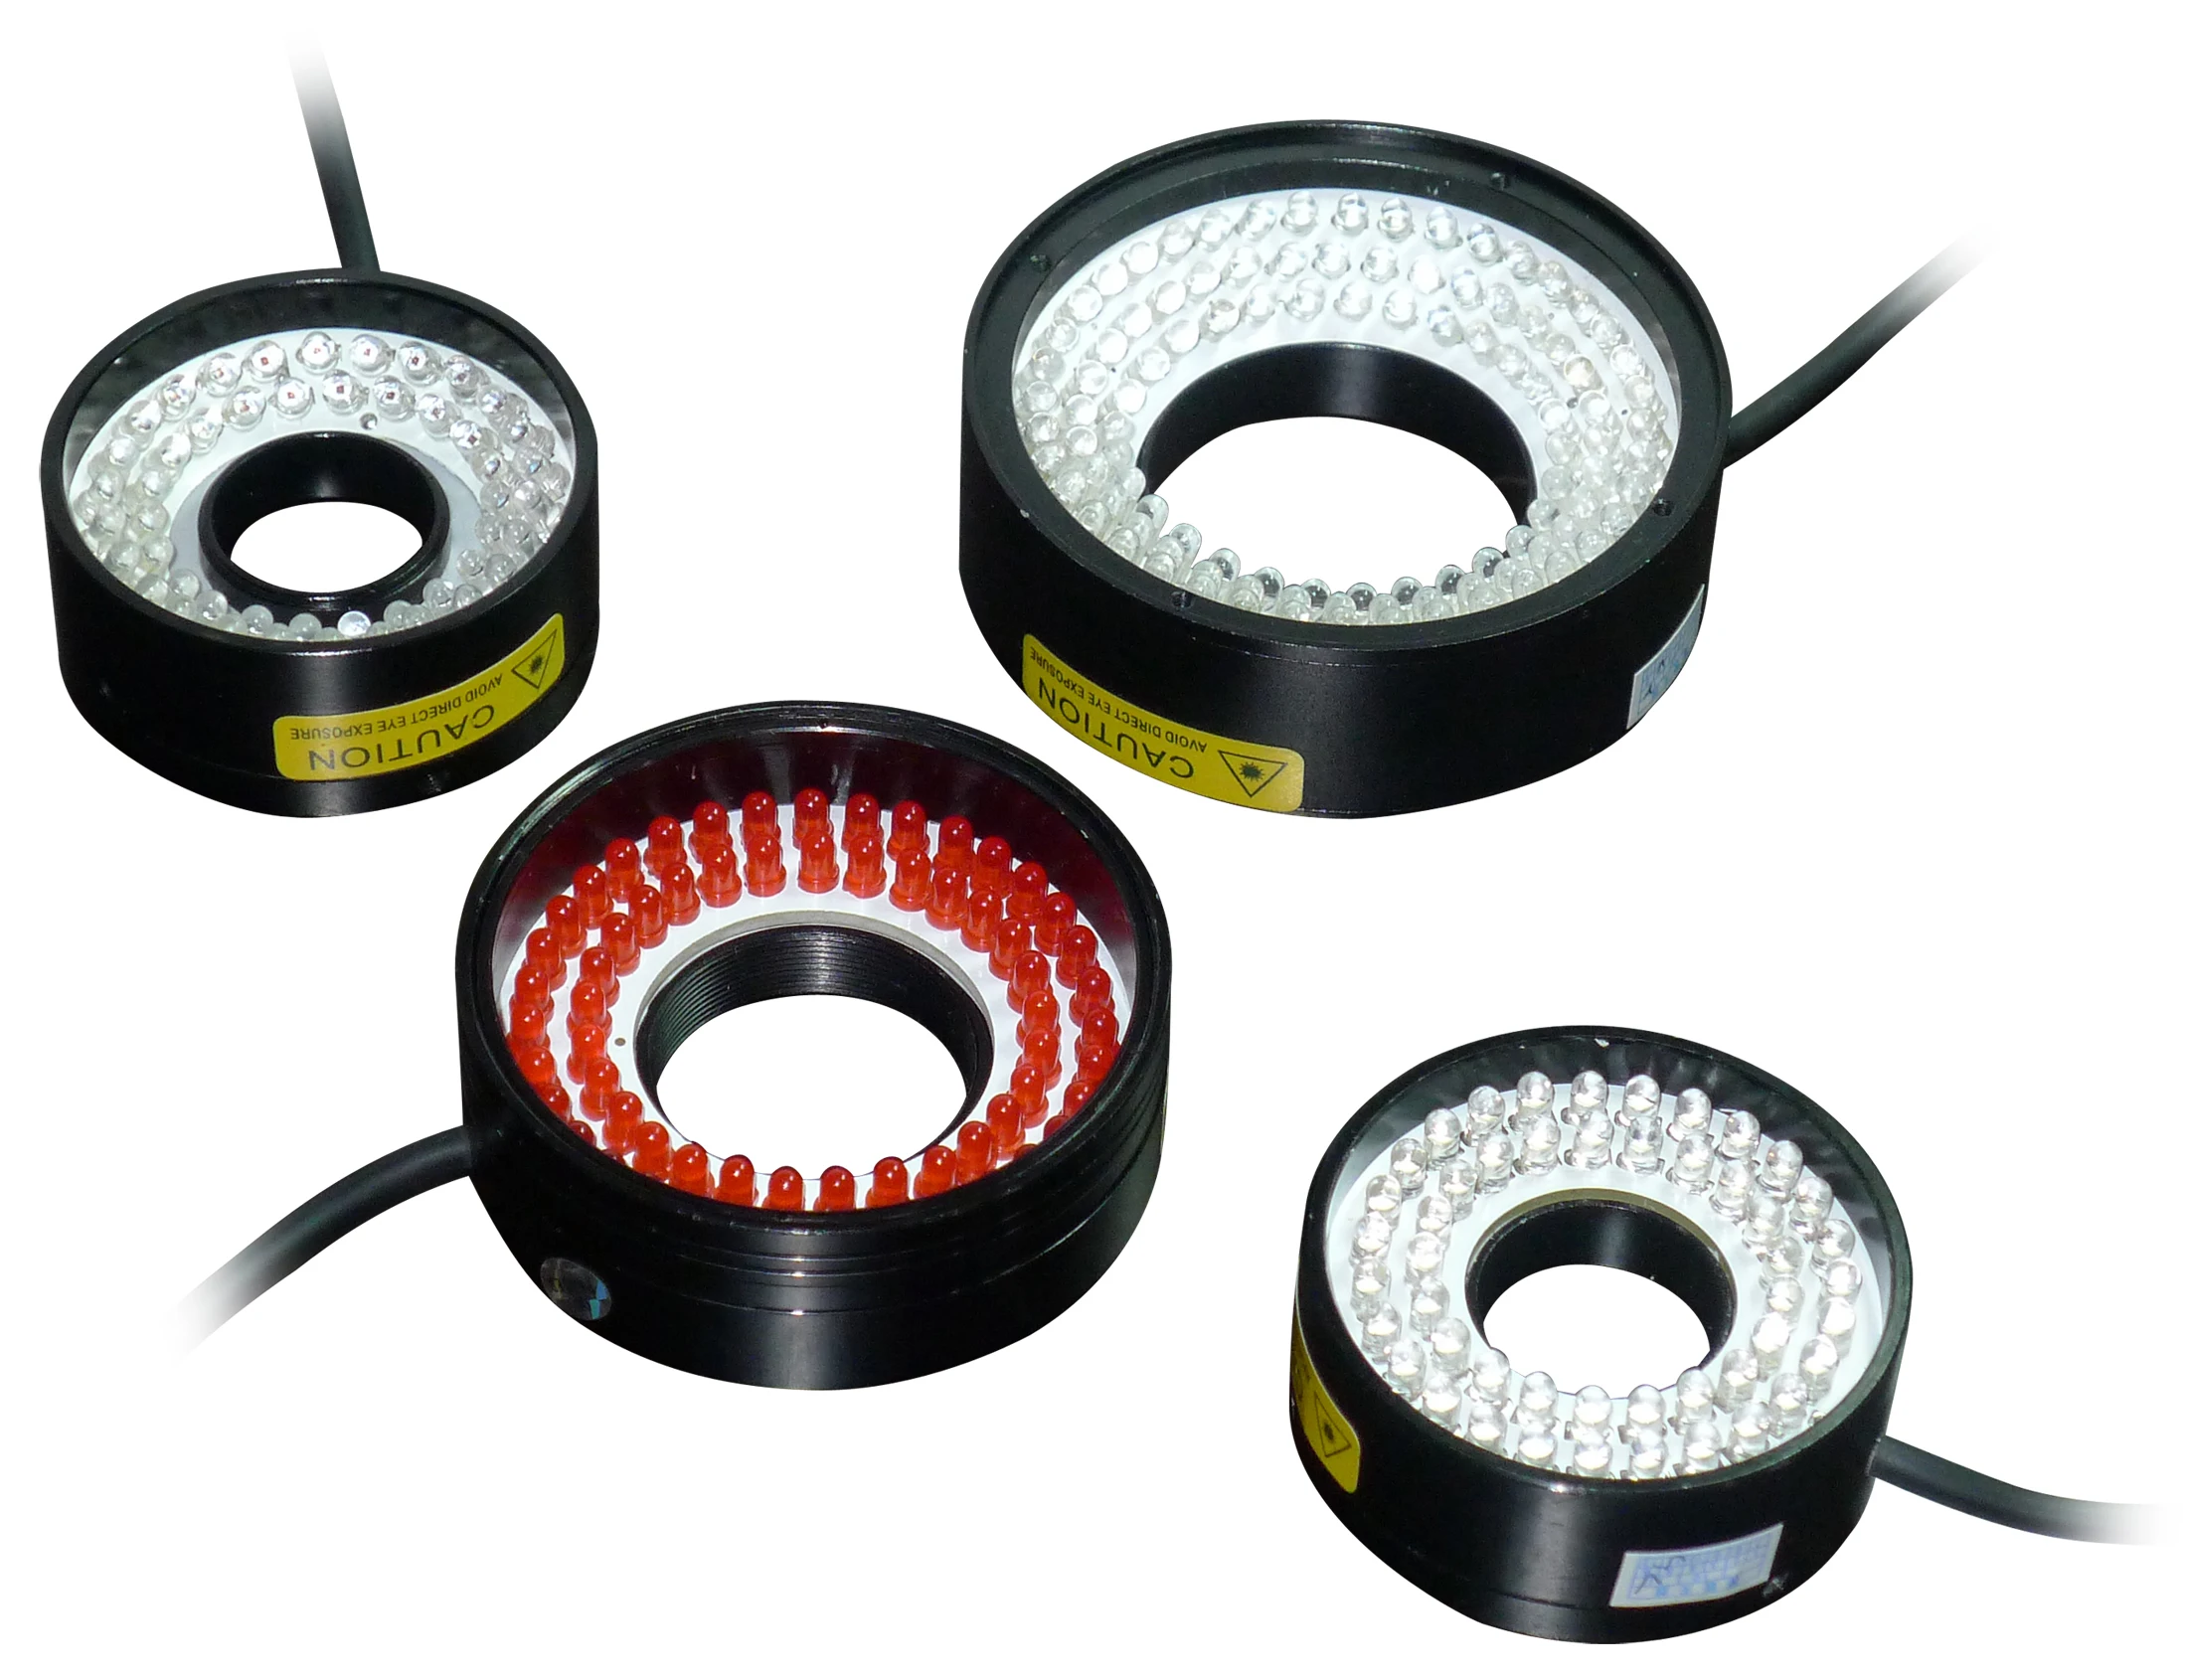 RI8090W automatikus érzékelő gép Vision CCD ipari kameragyűrű Vision fényforrás kör alakú LED lámpa - 3